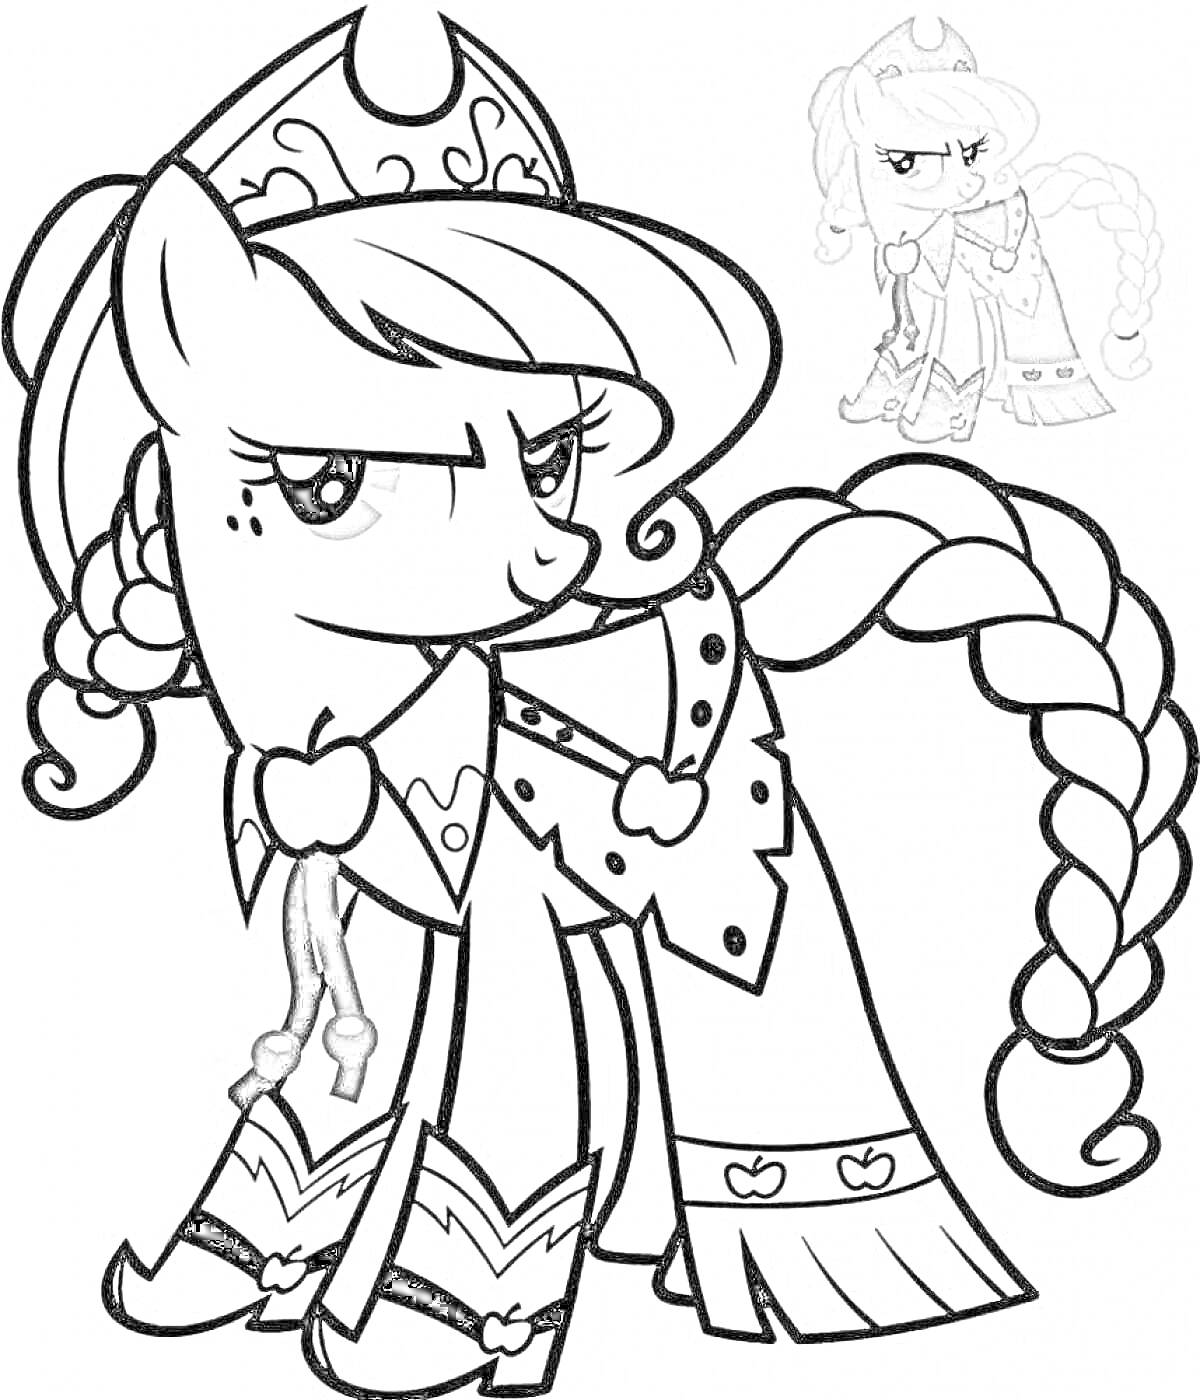 Раскраска Пони Эплджек с косами и короной в праздничной одежде, маленькое изображение в углу